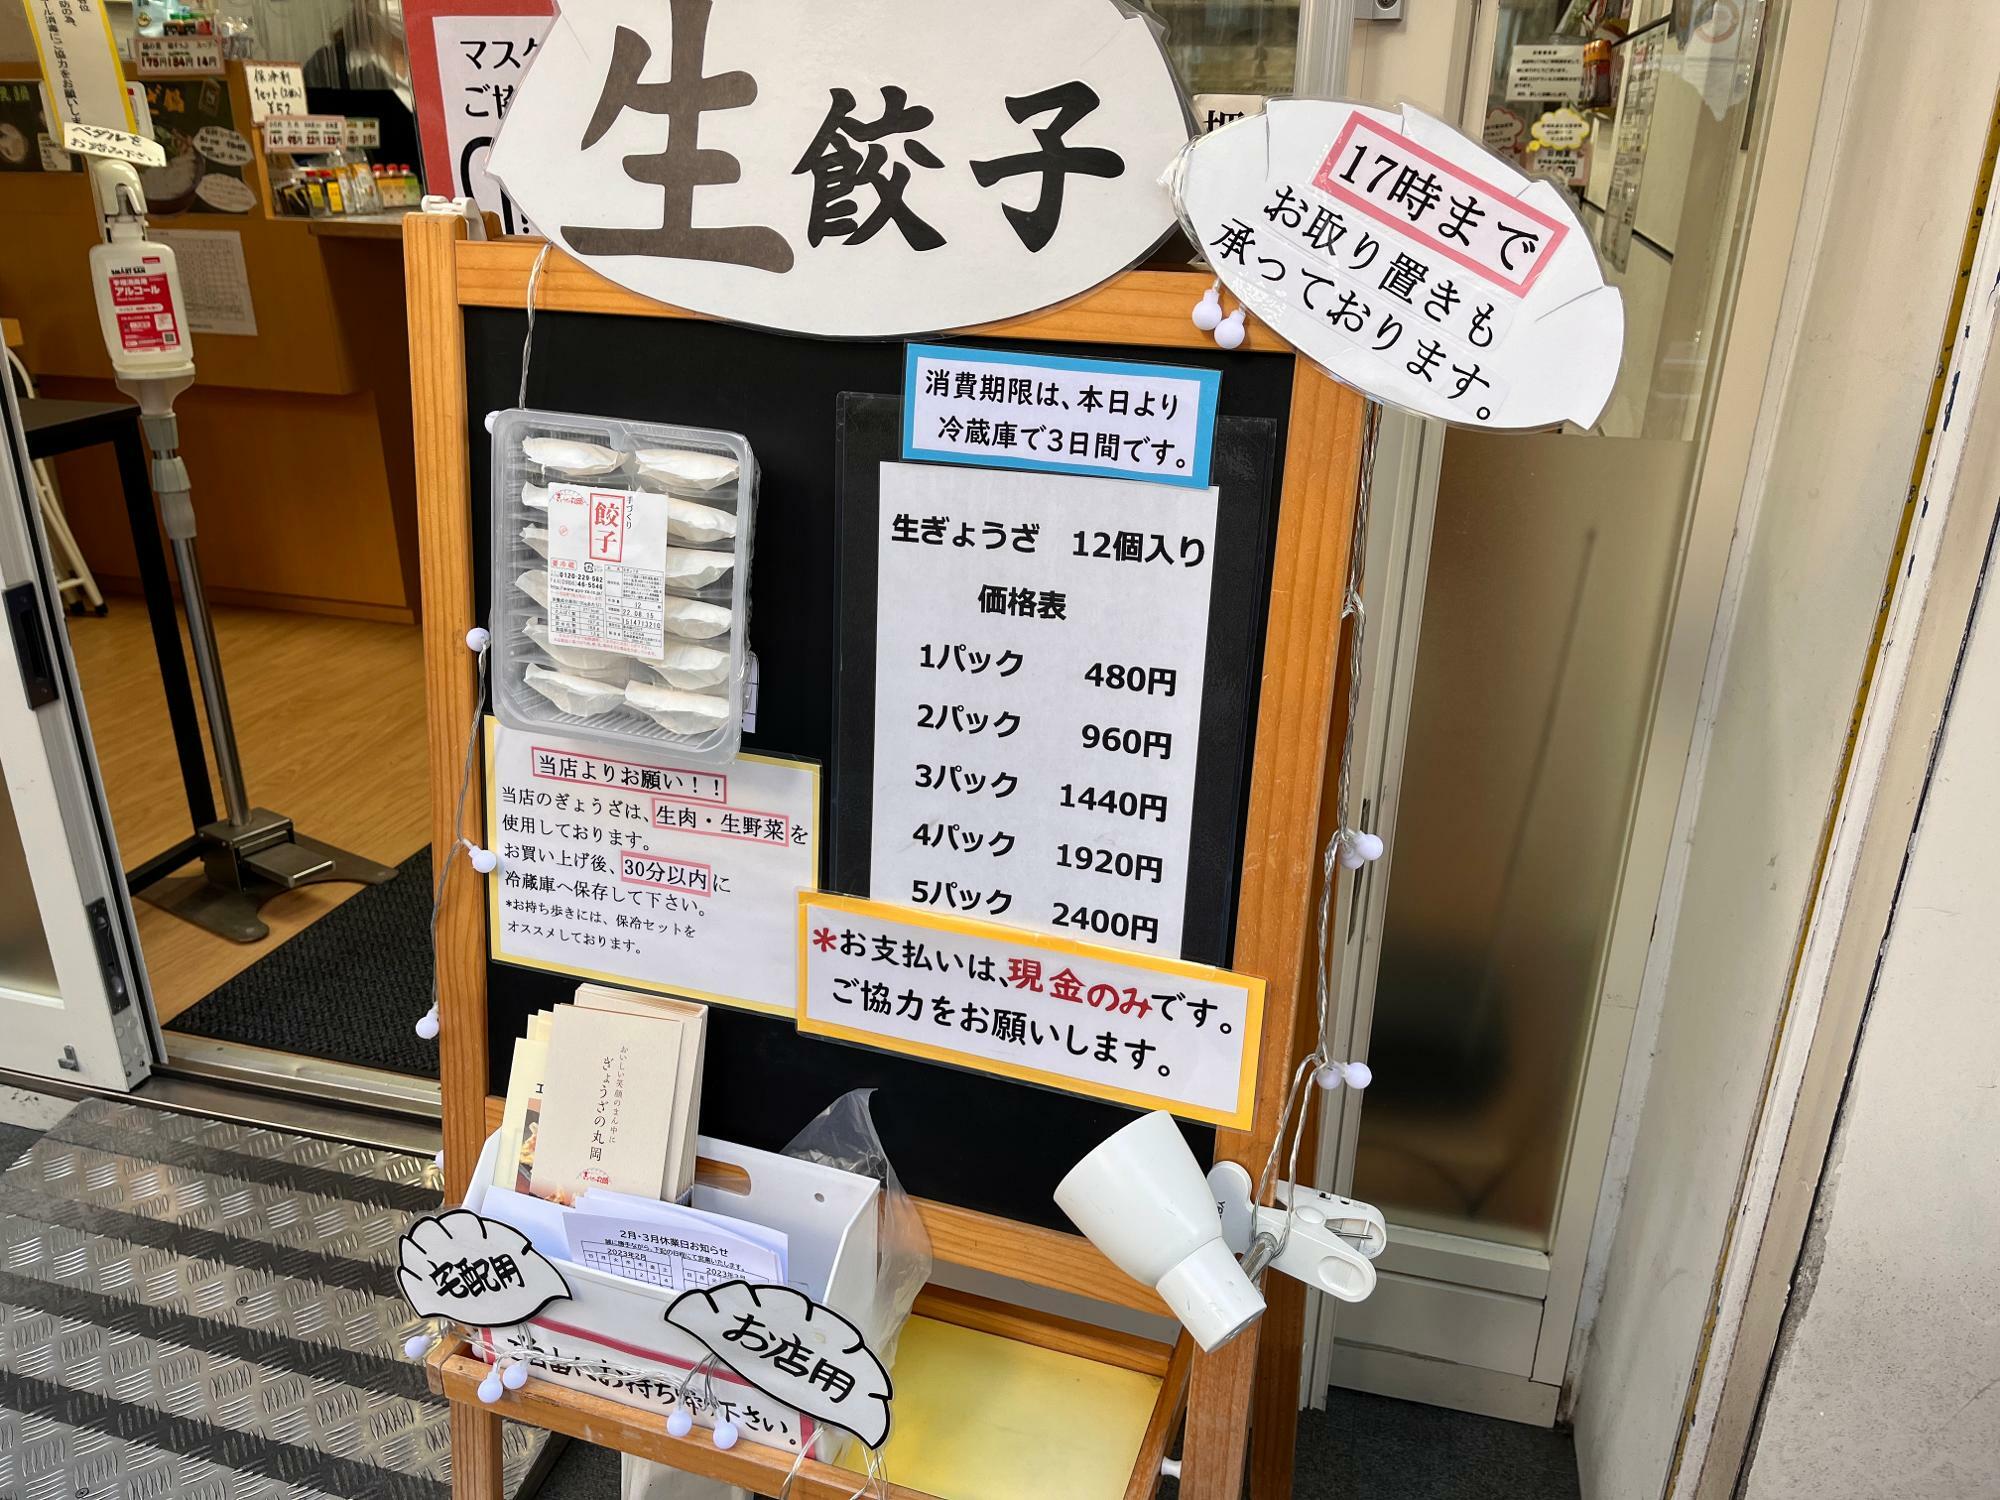 「餃子の丸岡 高槻店」メニュー看板